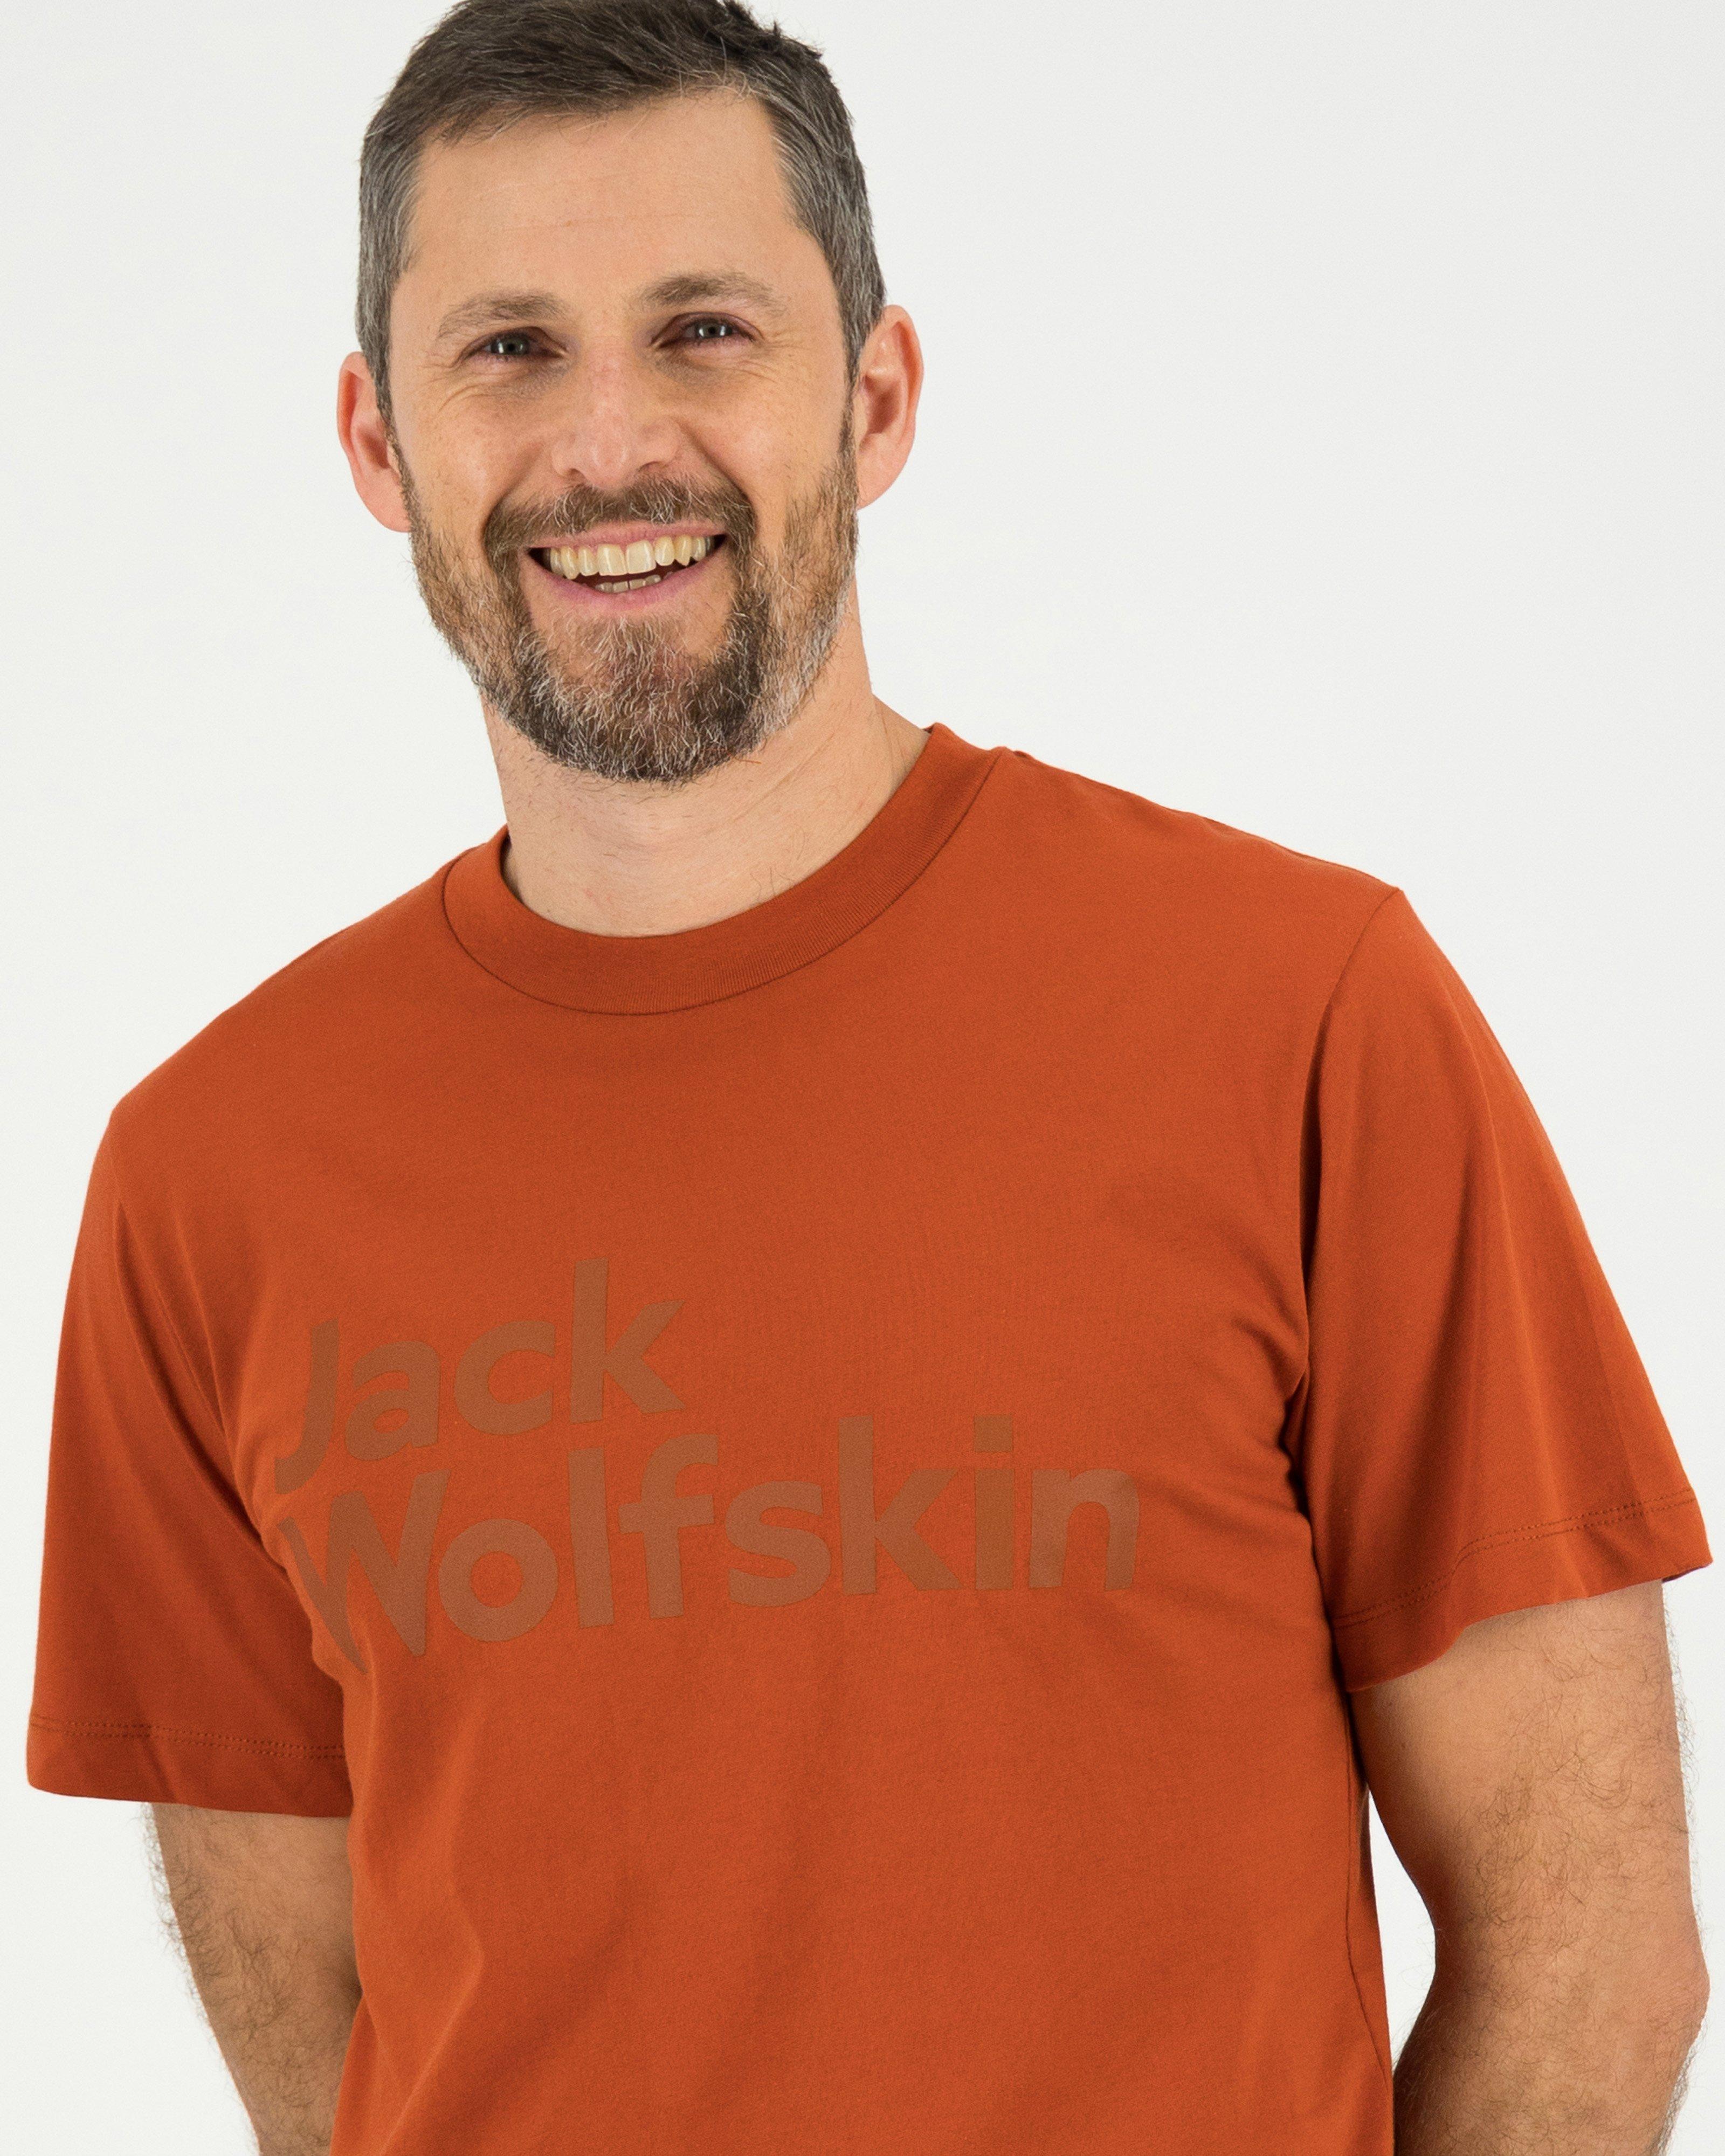 Jack Wolfskin Men’s Essential Logo Cotton T-shirt -  Dark Red